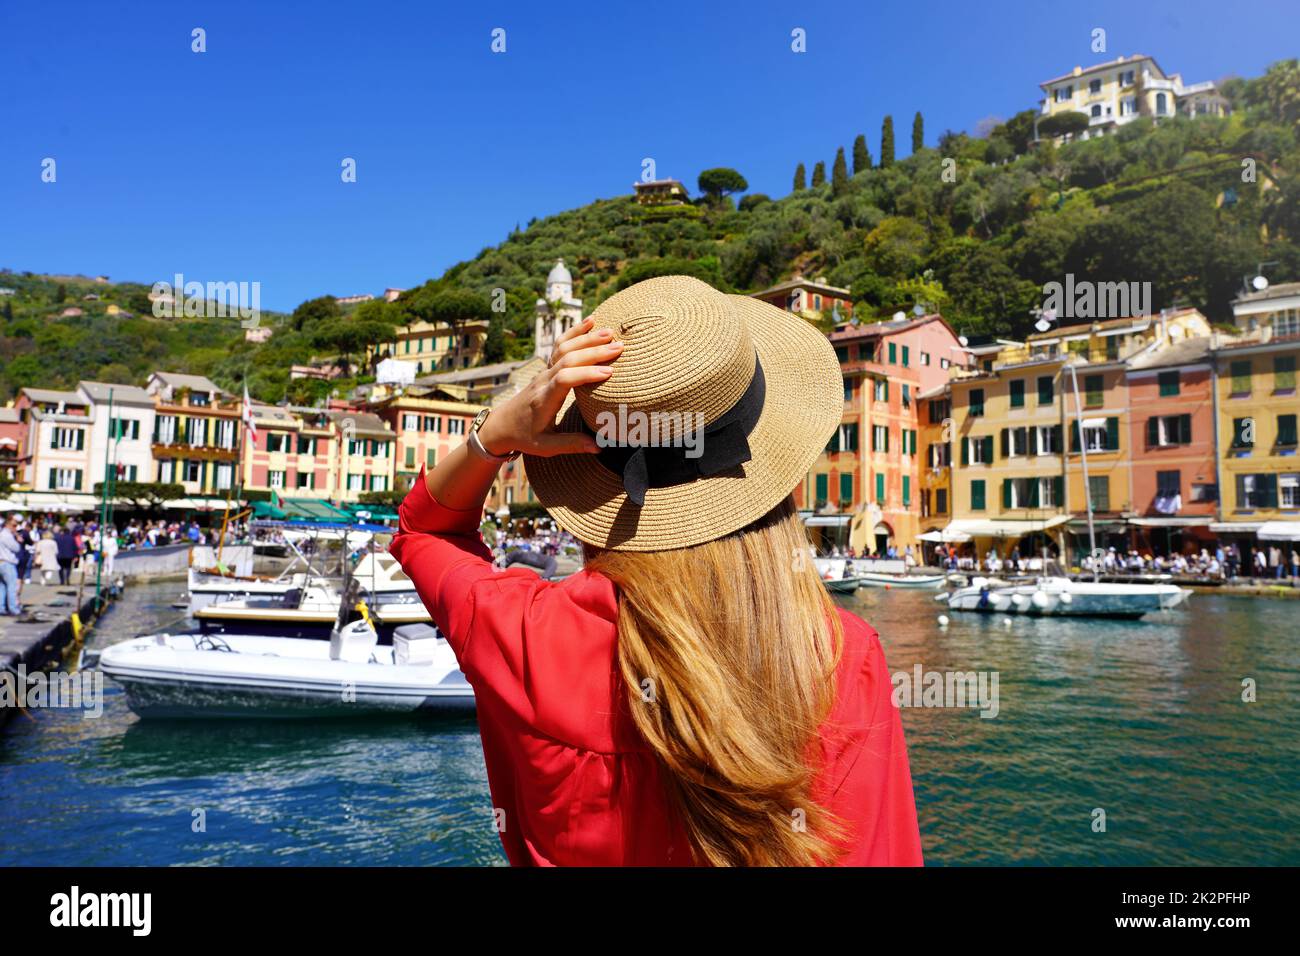 Urlaub in Portofino. Rückblick auf das wunderschöne Modemädchen mit Blick auf das farbenfrohe, malerische Dorf Portofino an der italienischen Riviera. Sommerurlaub in Italien. Stockfoto